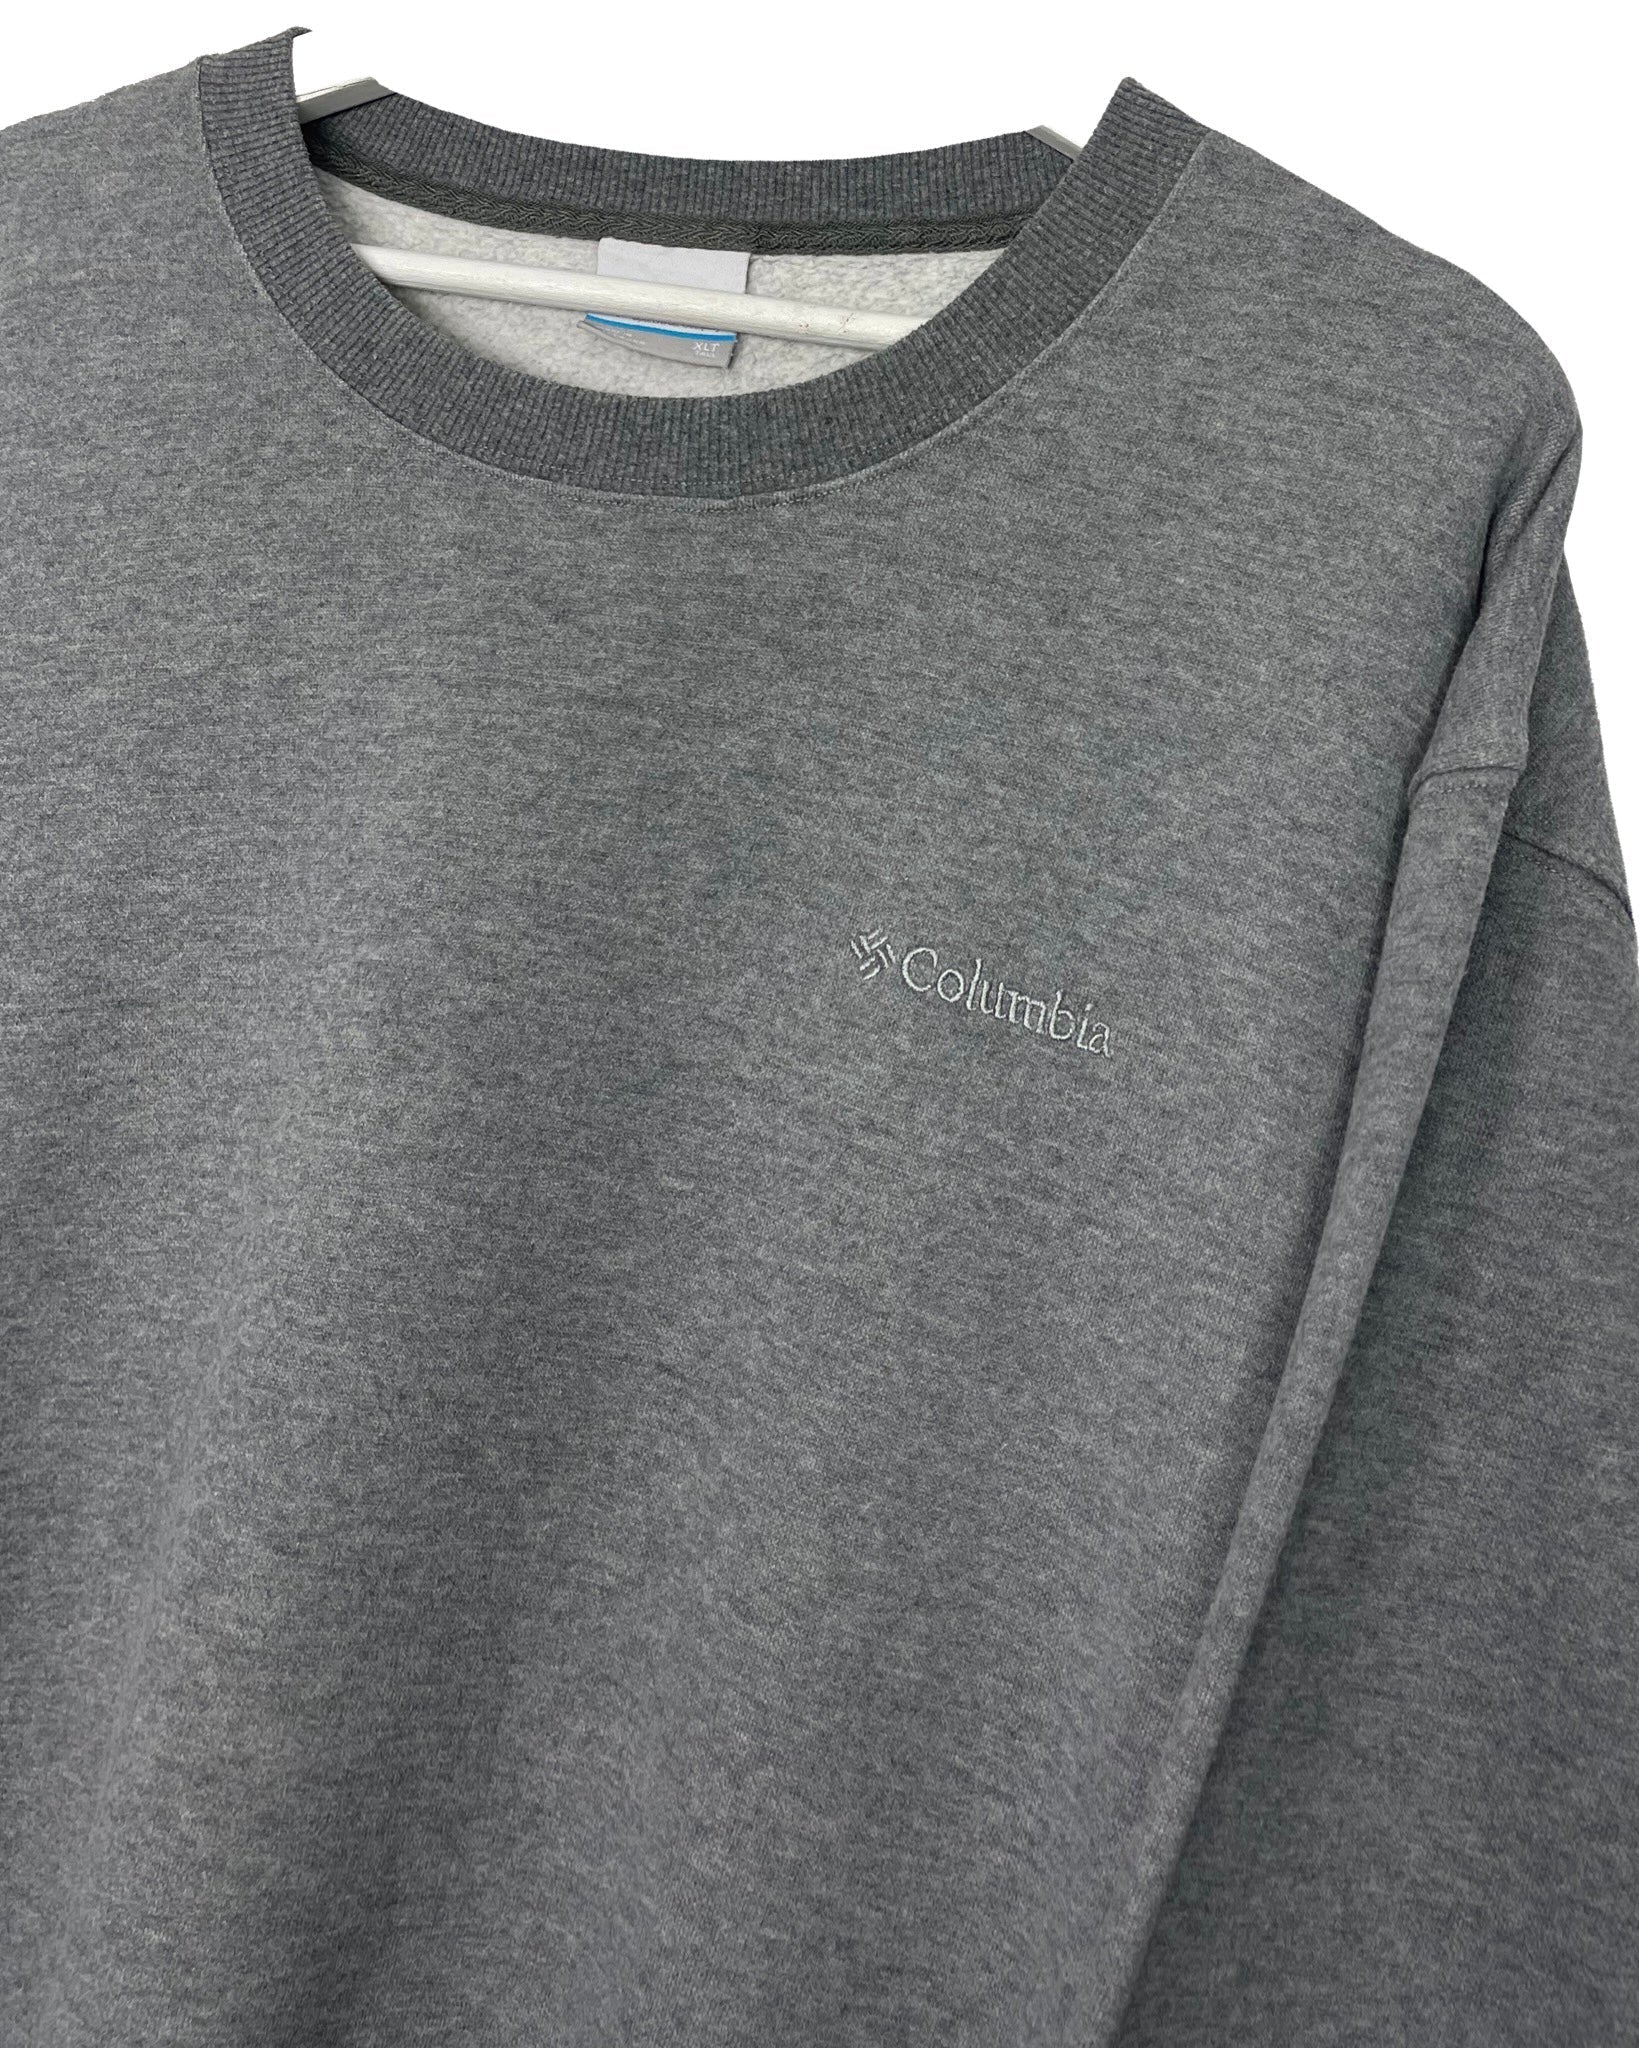  Sweatshirt Columbia Sweat - XL - PLOMOSTORE